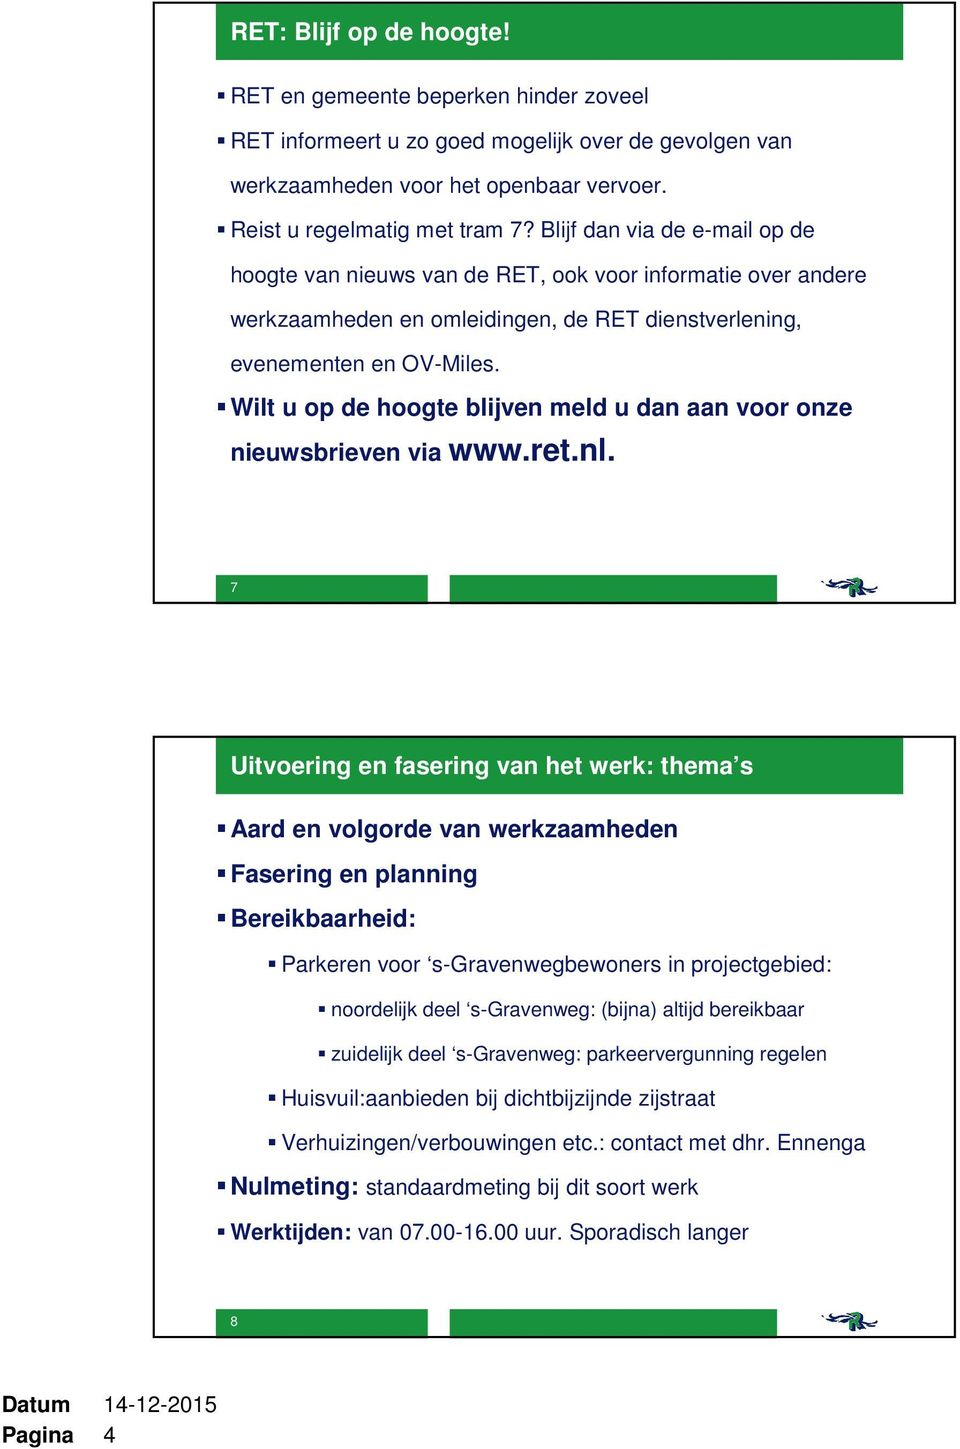 Wilt u op de hoogte blijven meld u dan aan voor onze nieuwsbrieven via www.ret.nl.